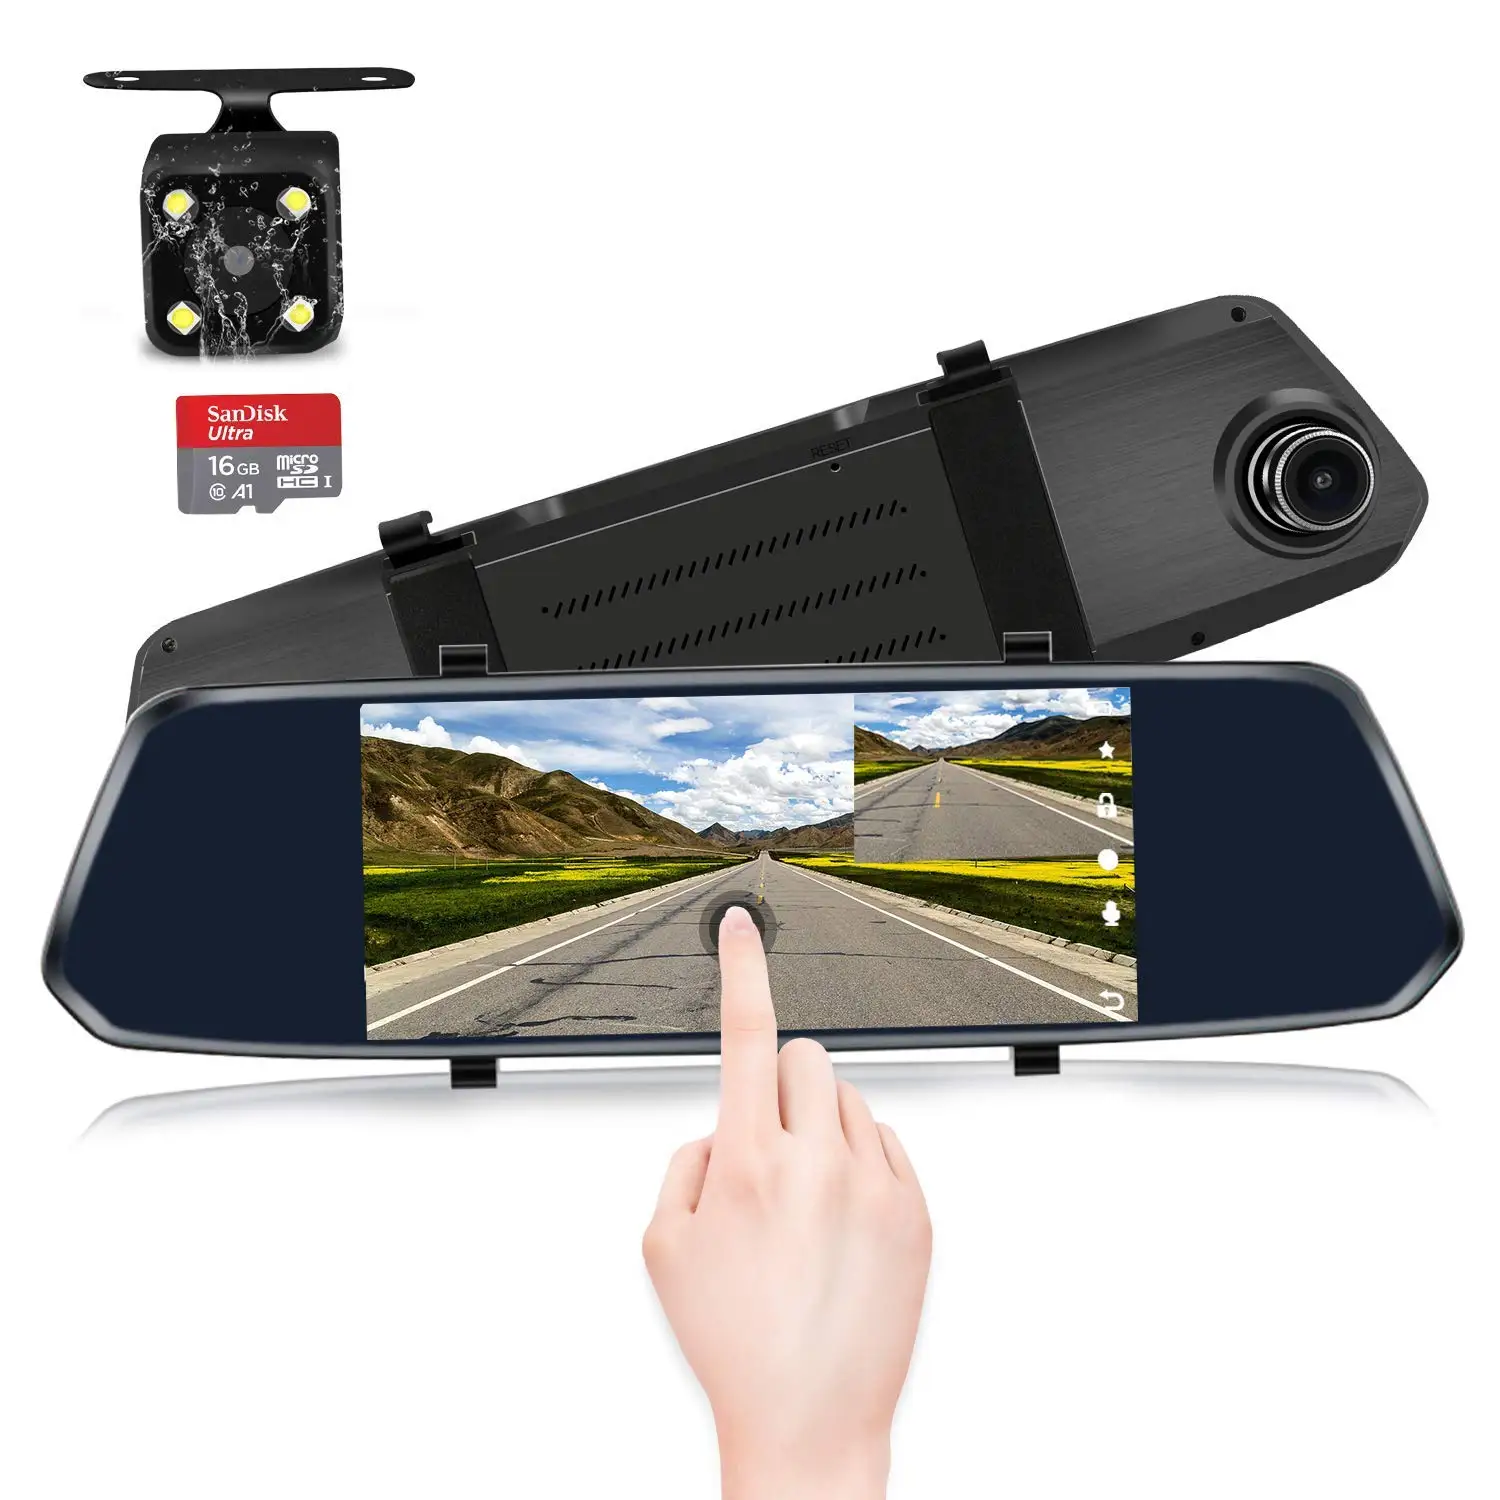 Dashcam 360 камера заднего вида, Автомобильный видеорегистратор " с двумя объективами, видеорегистратор, зеркальный видеорегистратор, Hd камера заднего вида, камера ночного видения, видеорегистратор